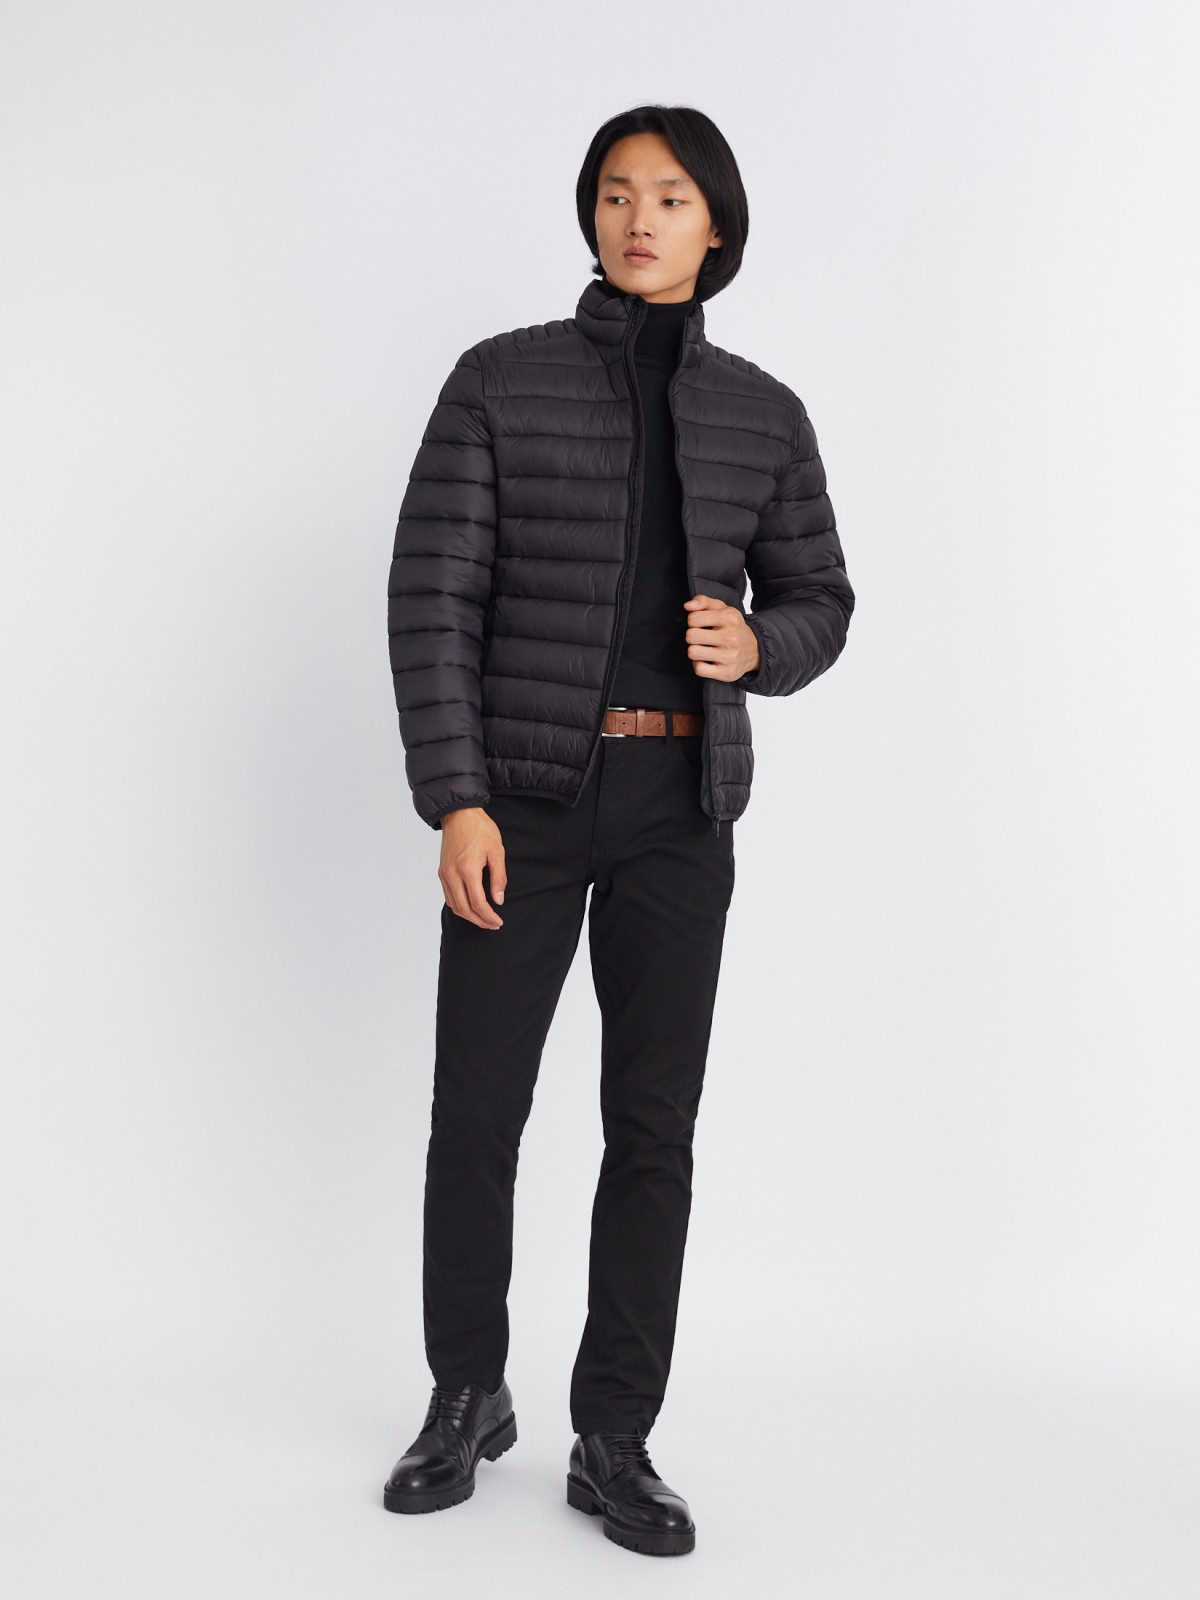 Лёгкая утеплённая стёганая куртка на молнии с воротником-стойкой zolla 013335102064, цвет черный, размер S - фото 2